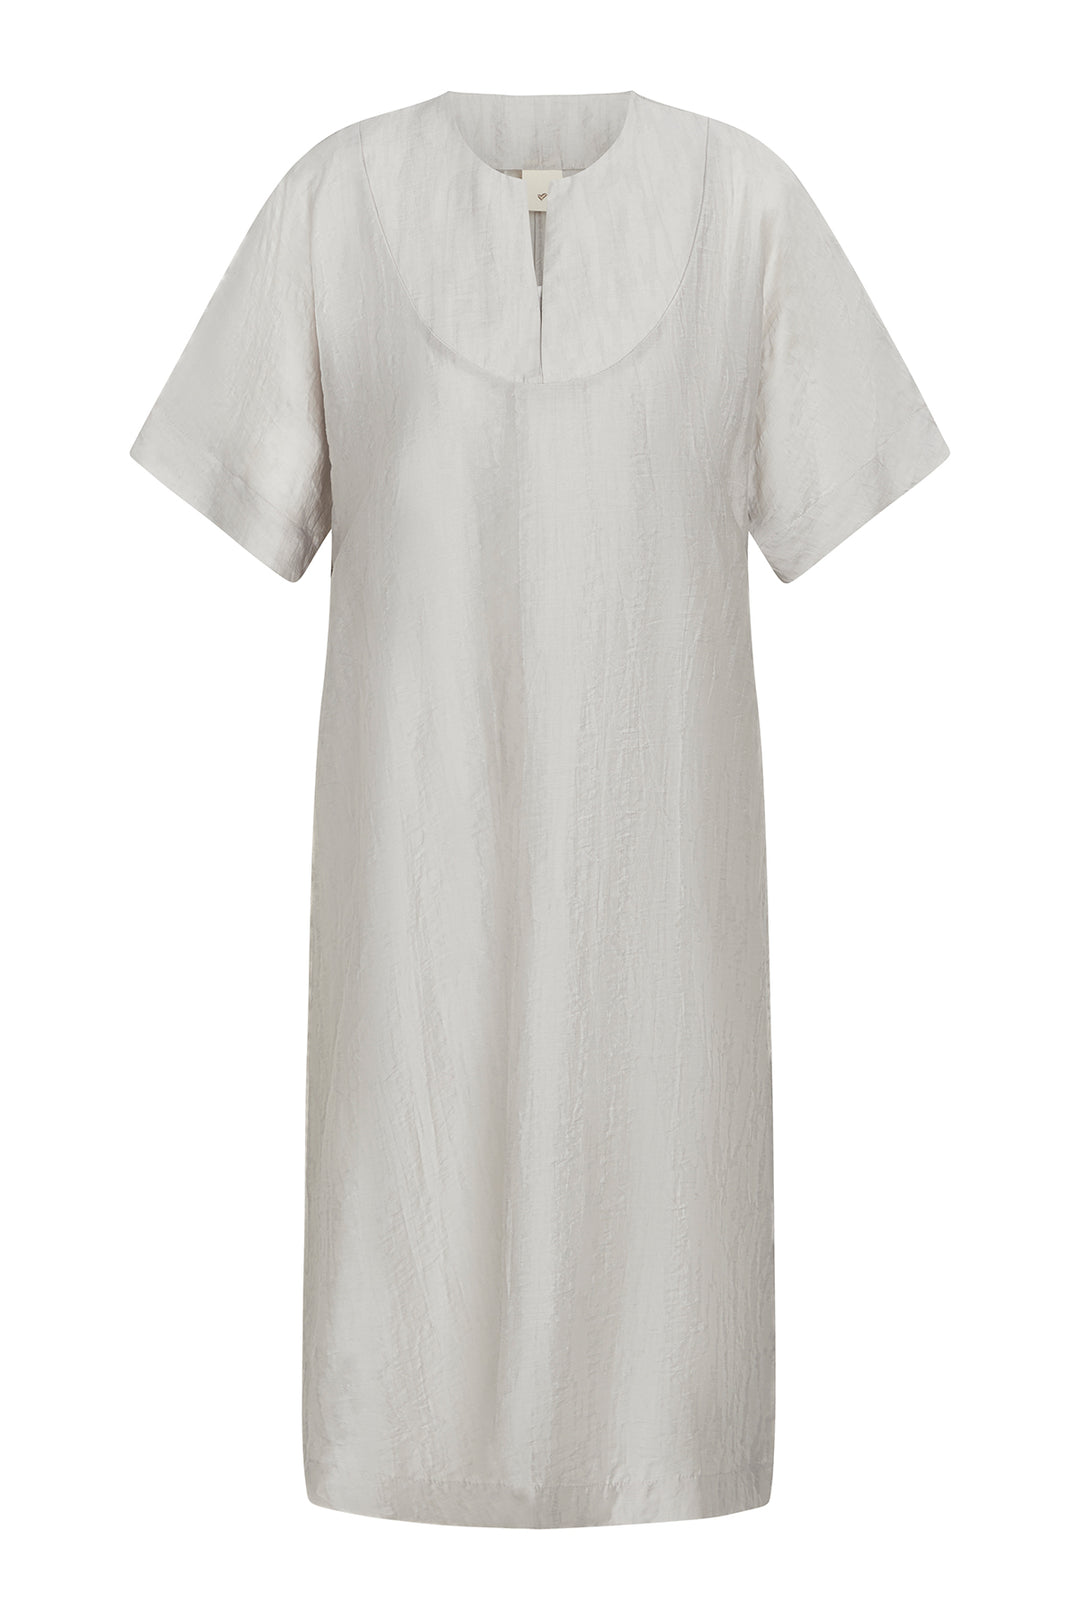 Heartmade Vira kjole DRESSES 133 White sand